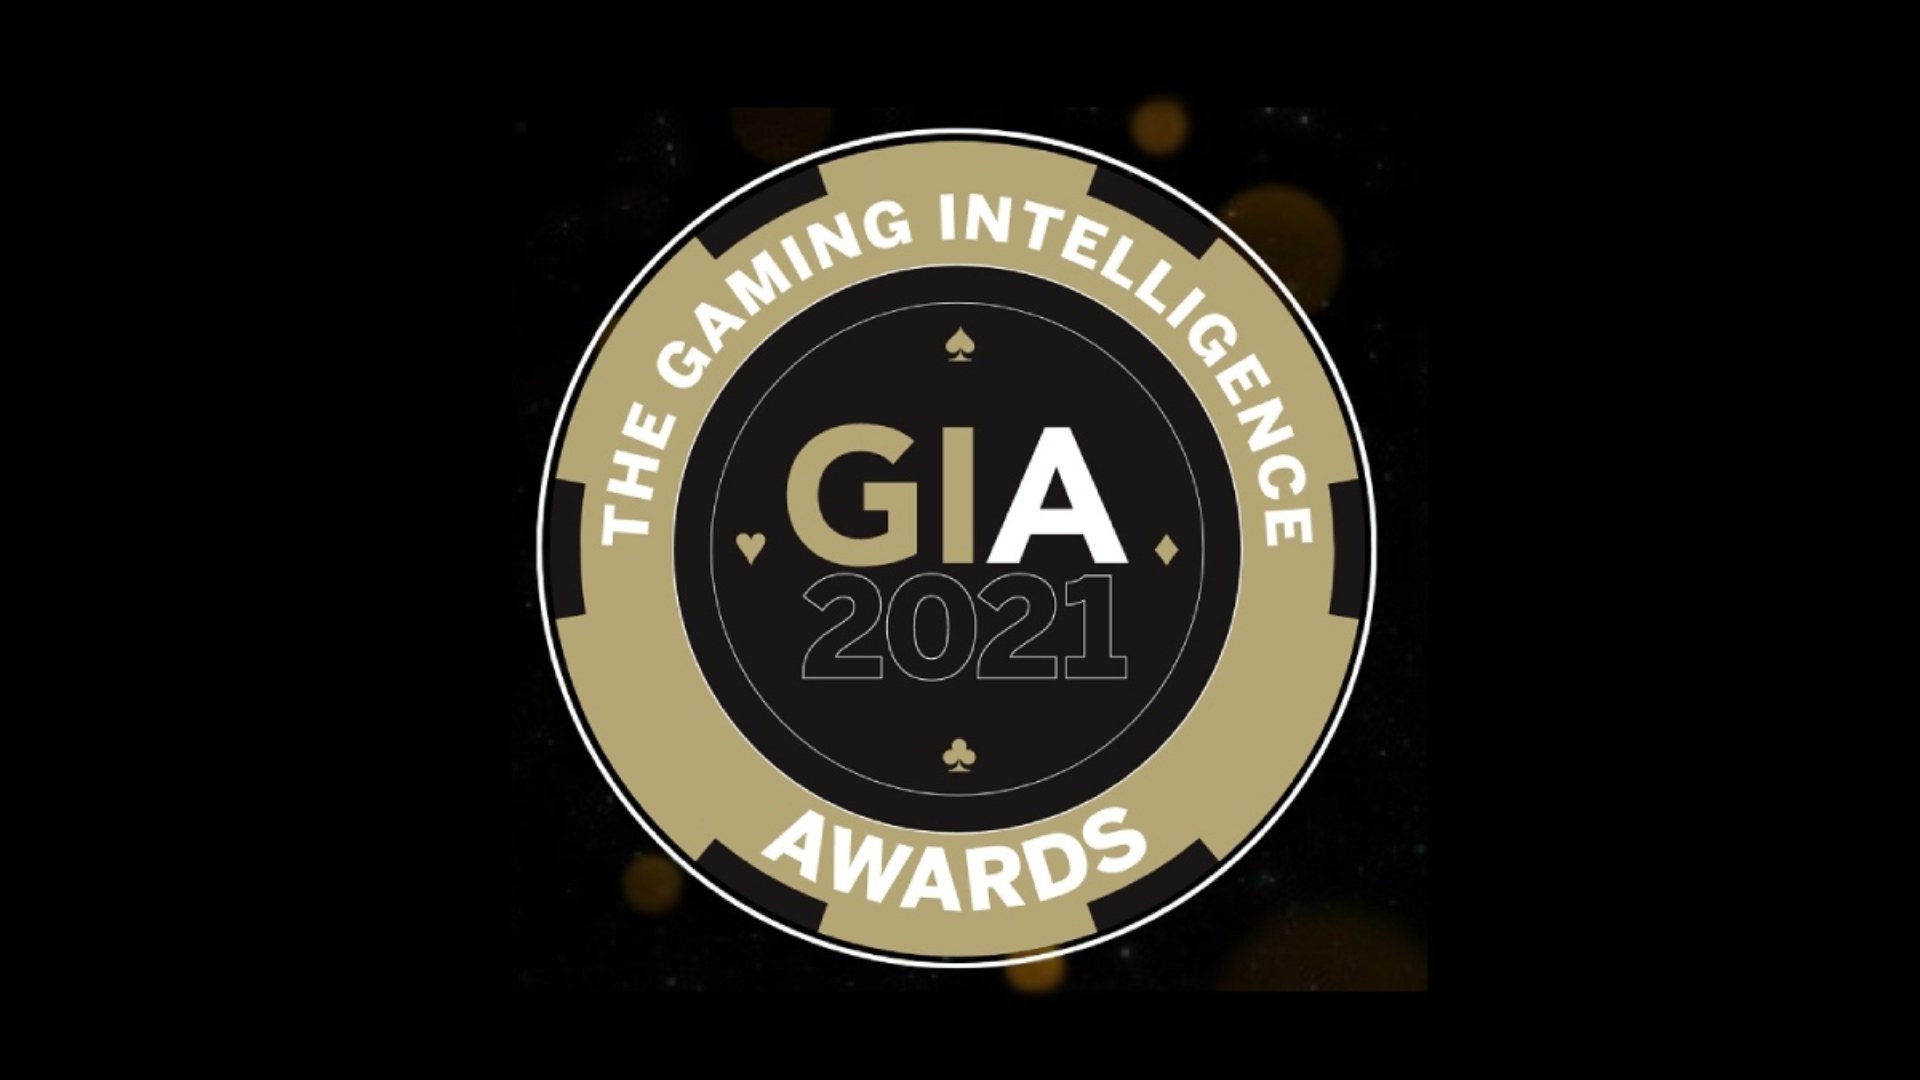 Melhores empresas de apostas e jogos da América Latina foram homenageadas no Gaming Intelligence Awards 2021.